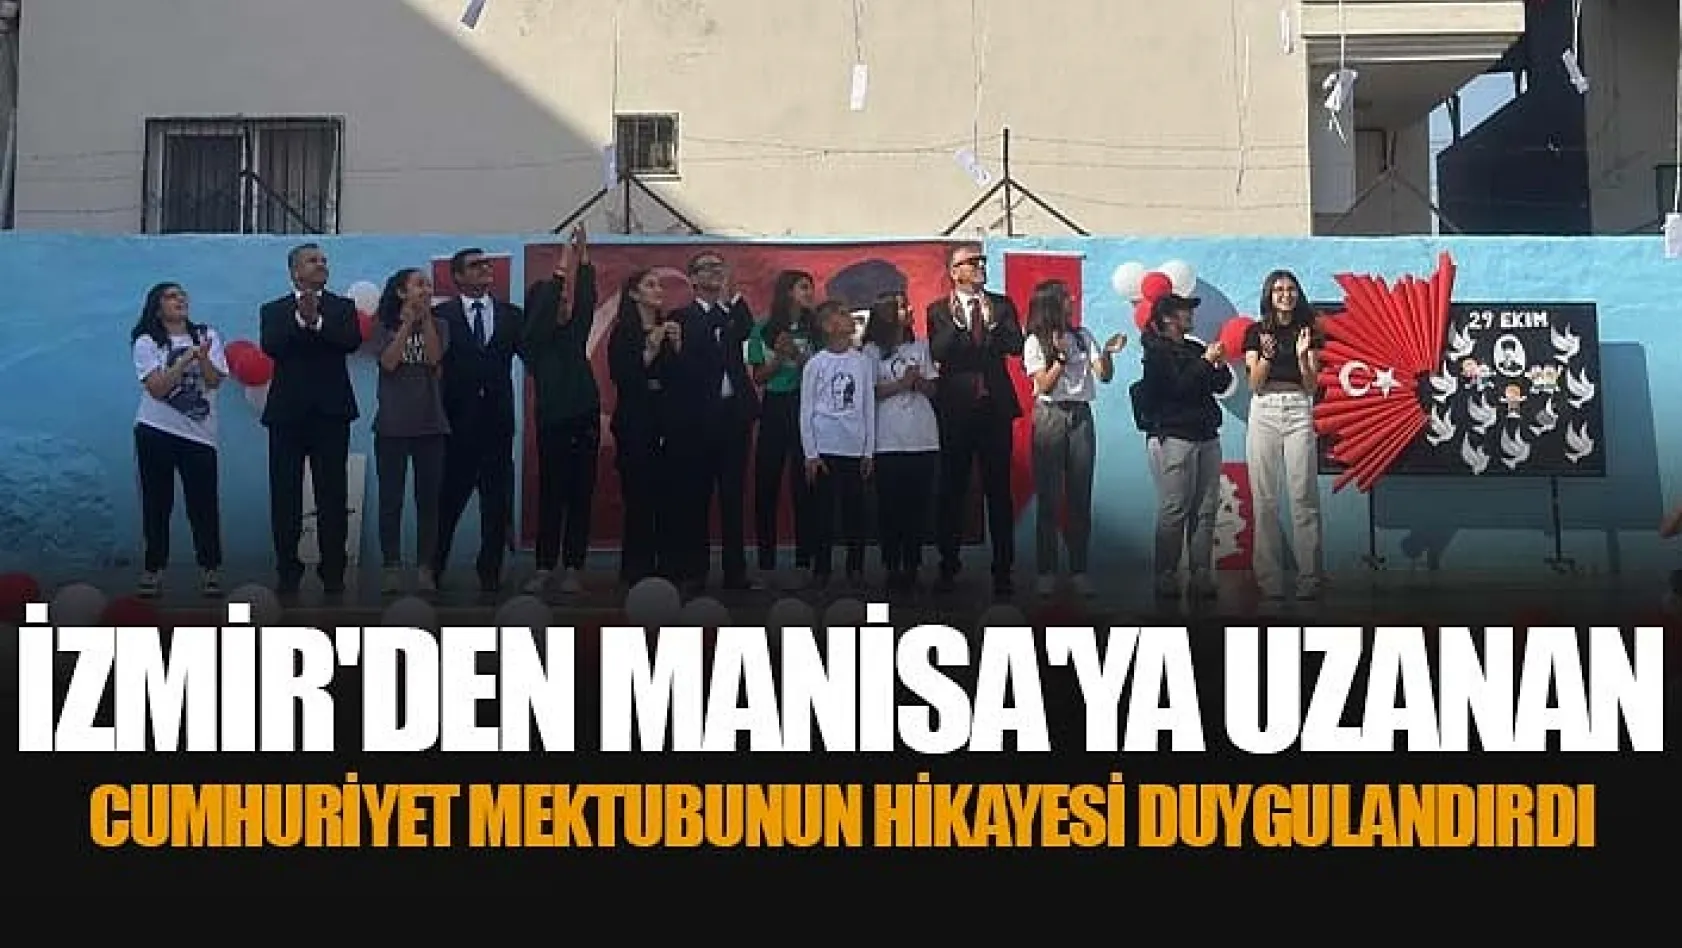 İzmir'den Manisa'ya Uzanan Cumhuriyet Mektubunun Hikayesi Duygulandırdı